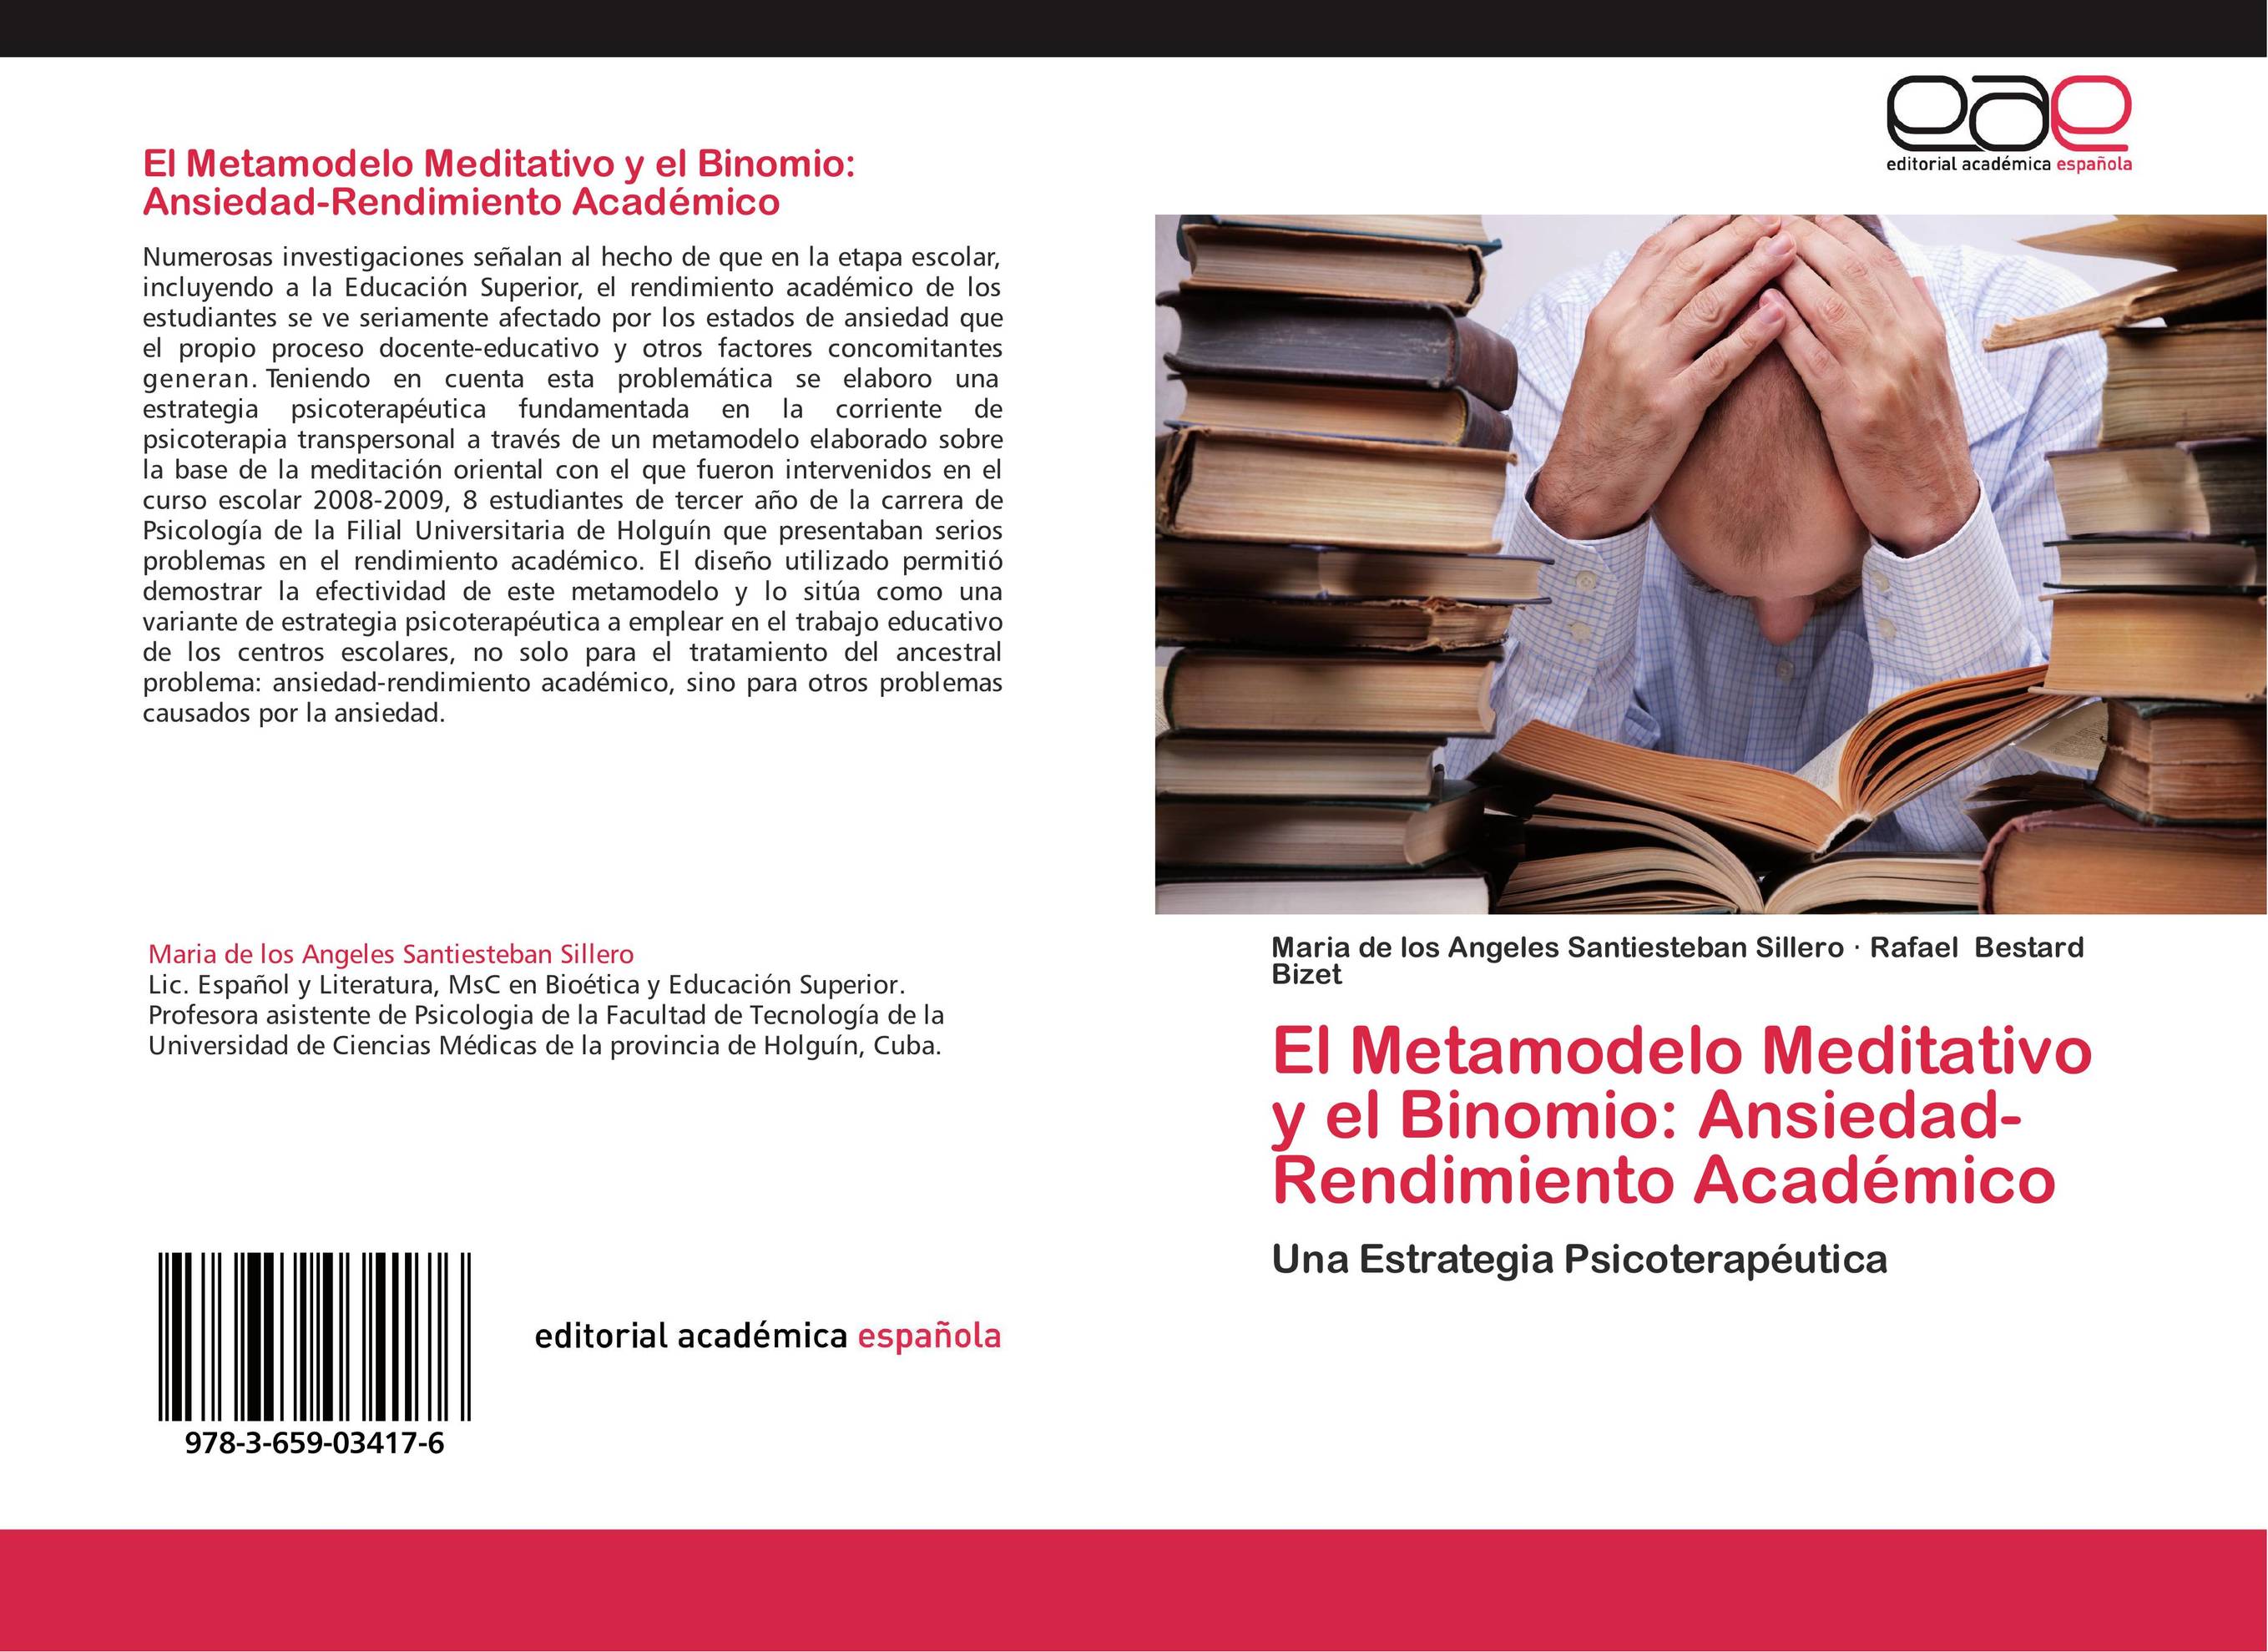 El Metamodelo Meditativo y el Binomio: Ansiedad-Rendimiento Académico